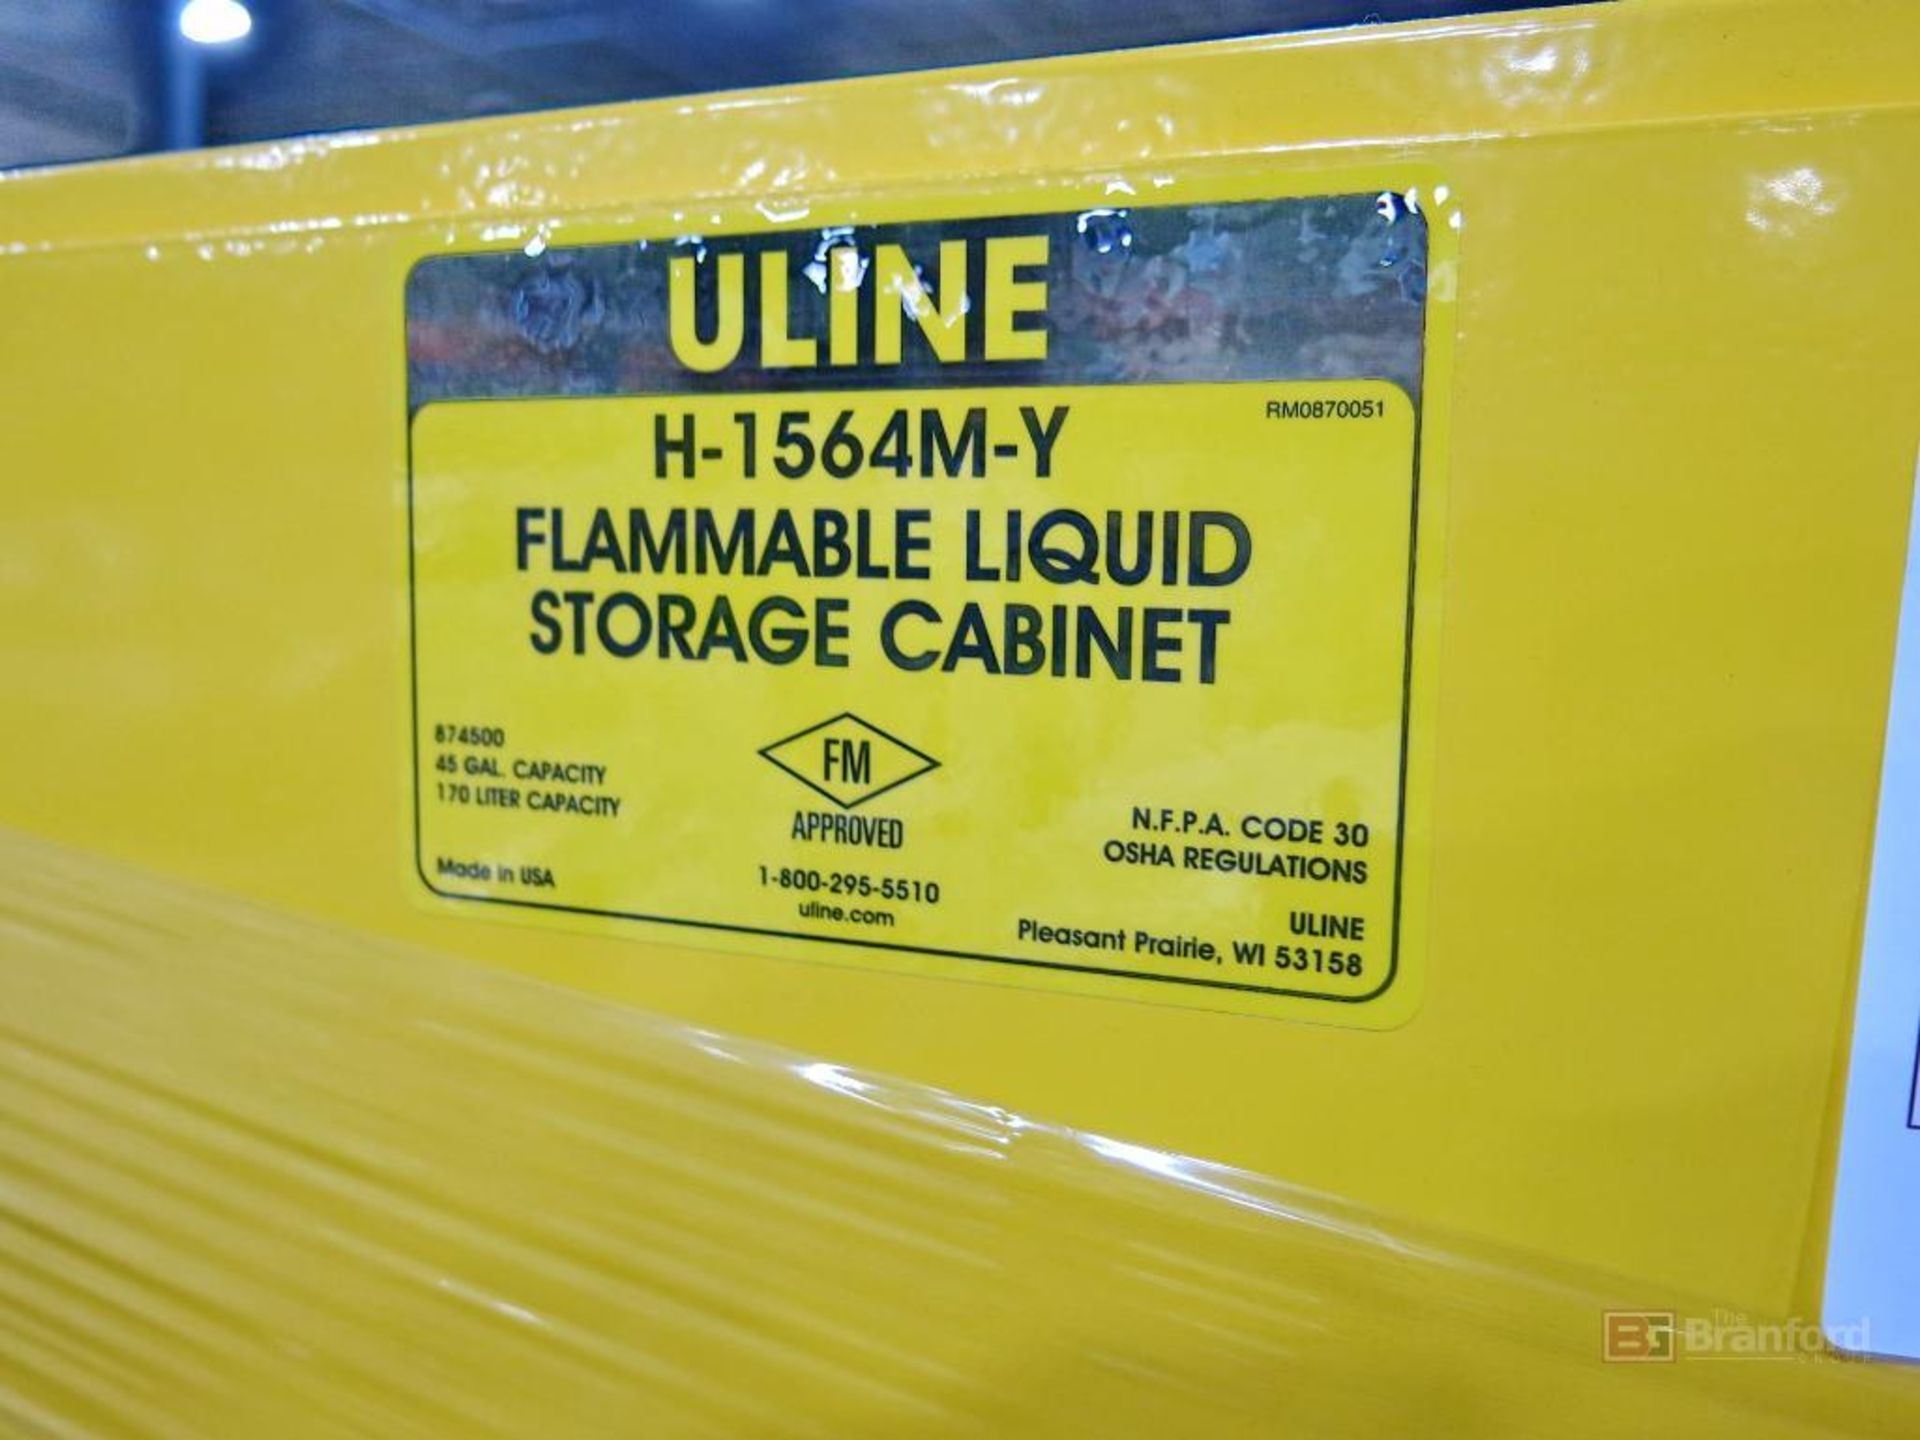 Uline 2-Door Flammable Liquid Storage Cabinet - Image 2 of 2